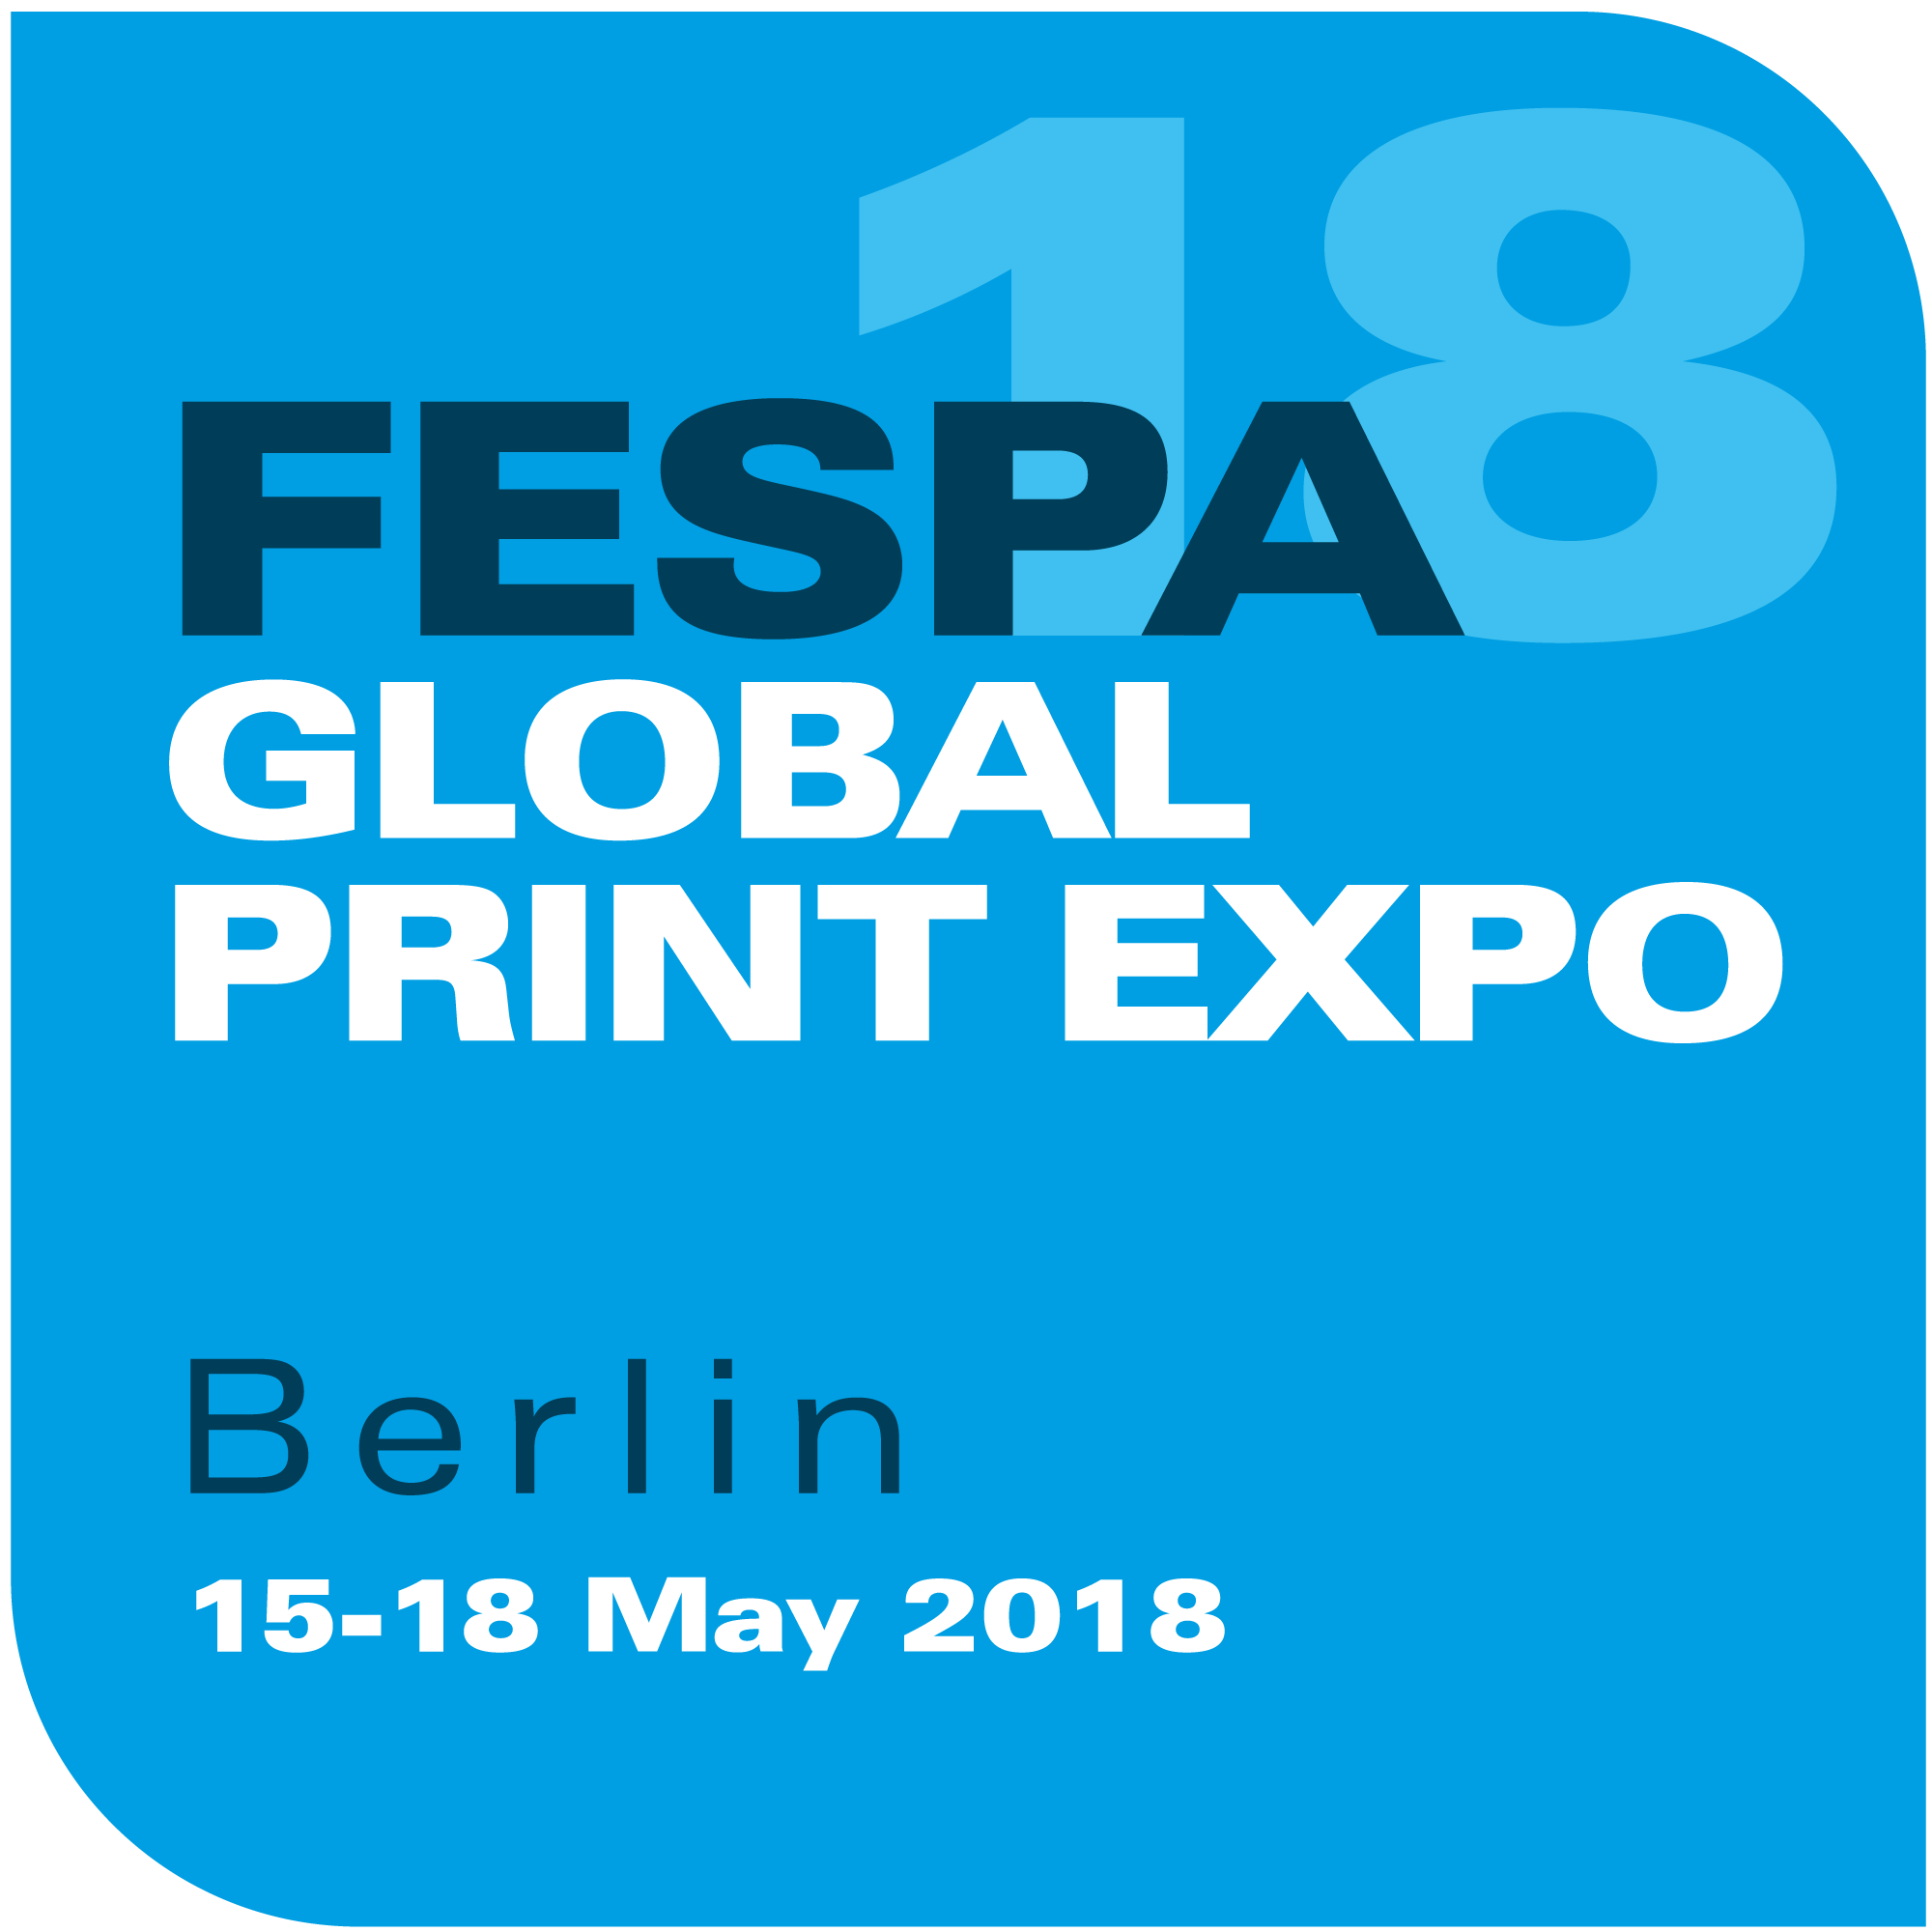 FESPA-GLOBAL-PRINT-EXPO-2018